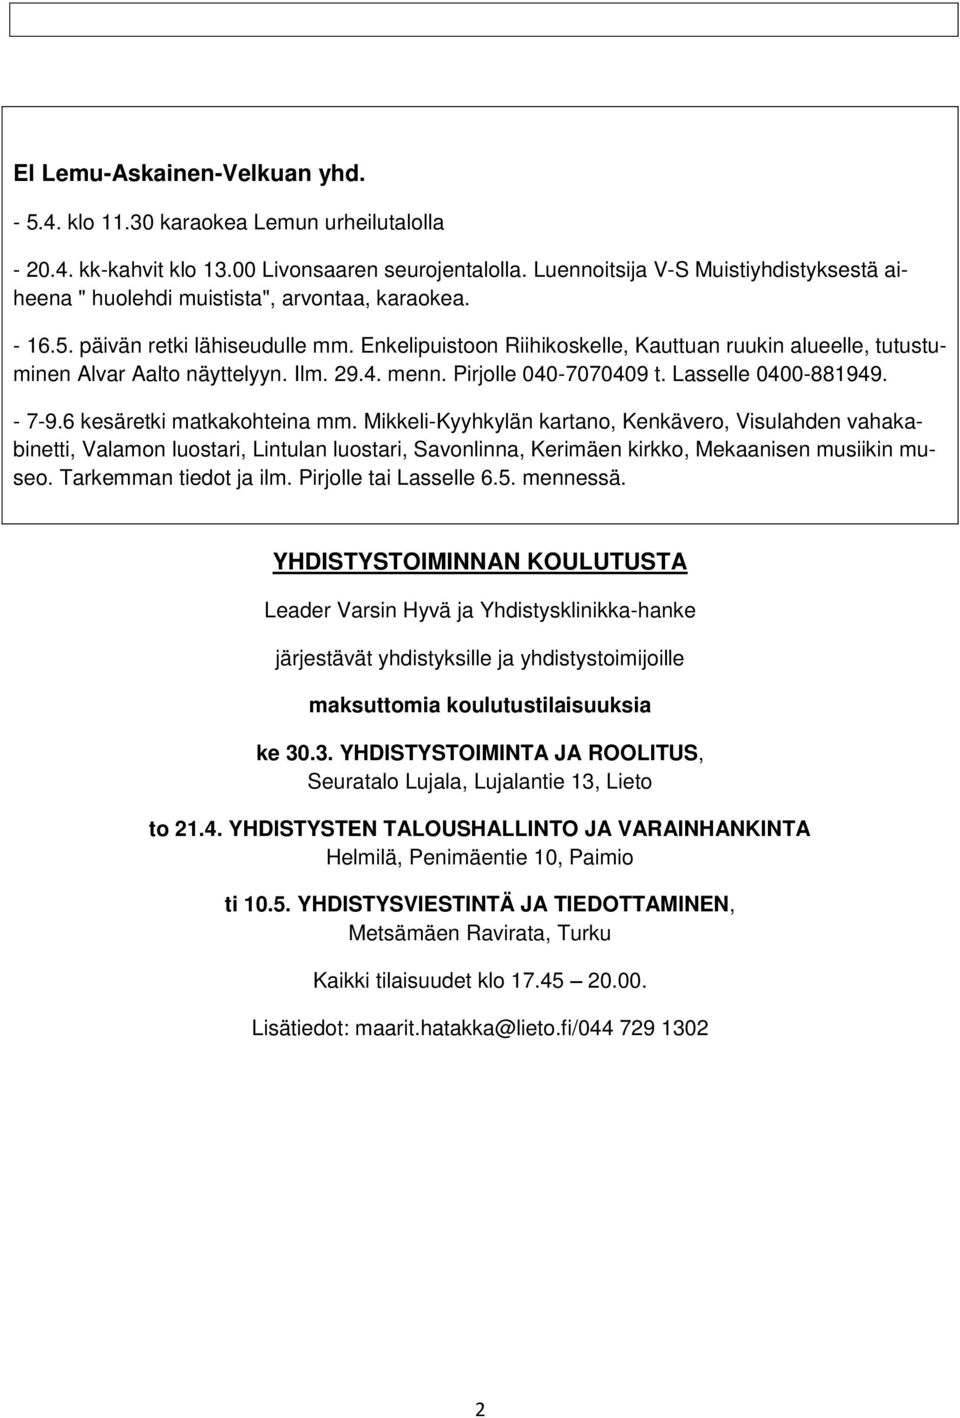 Enkelipuistoon Riihikoskelle, Kauttuan ruukin alueelle, tutustuminen Alvar Aalto näyttelyyn. Ilm. 29.4. menn. Pirjolle 040-7070409 t. Lasselle 0400-881949. - 7-9.6 kesäretki matkakohteina mm.